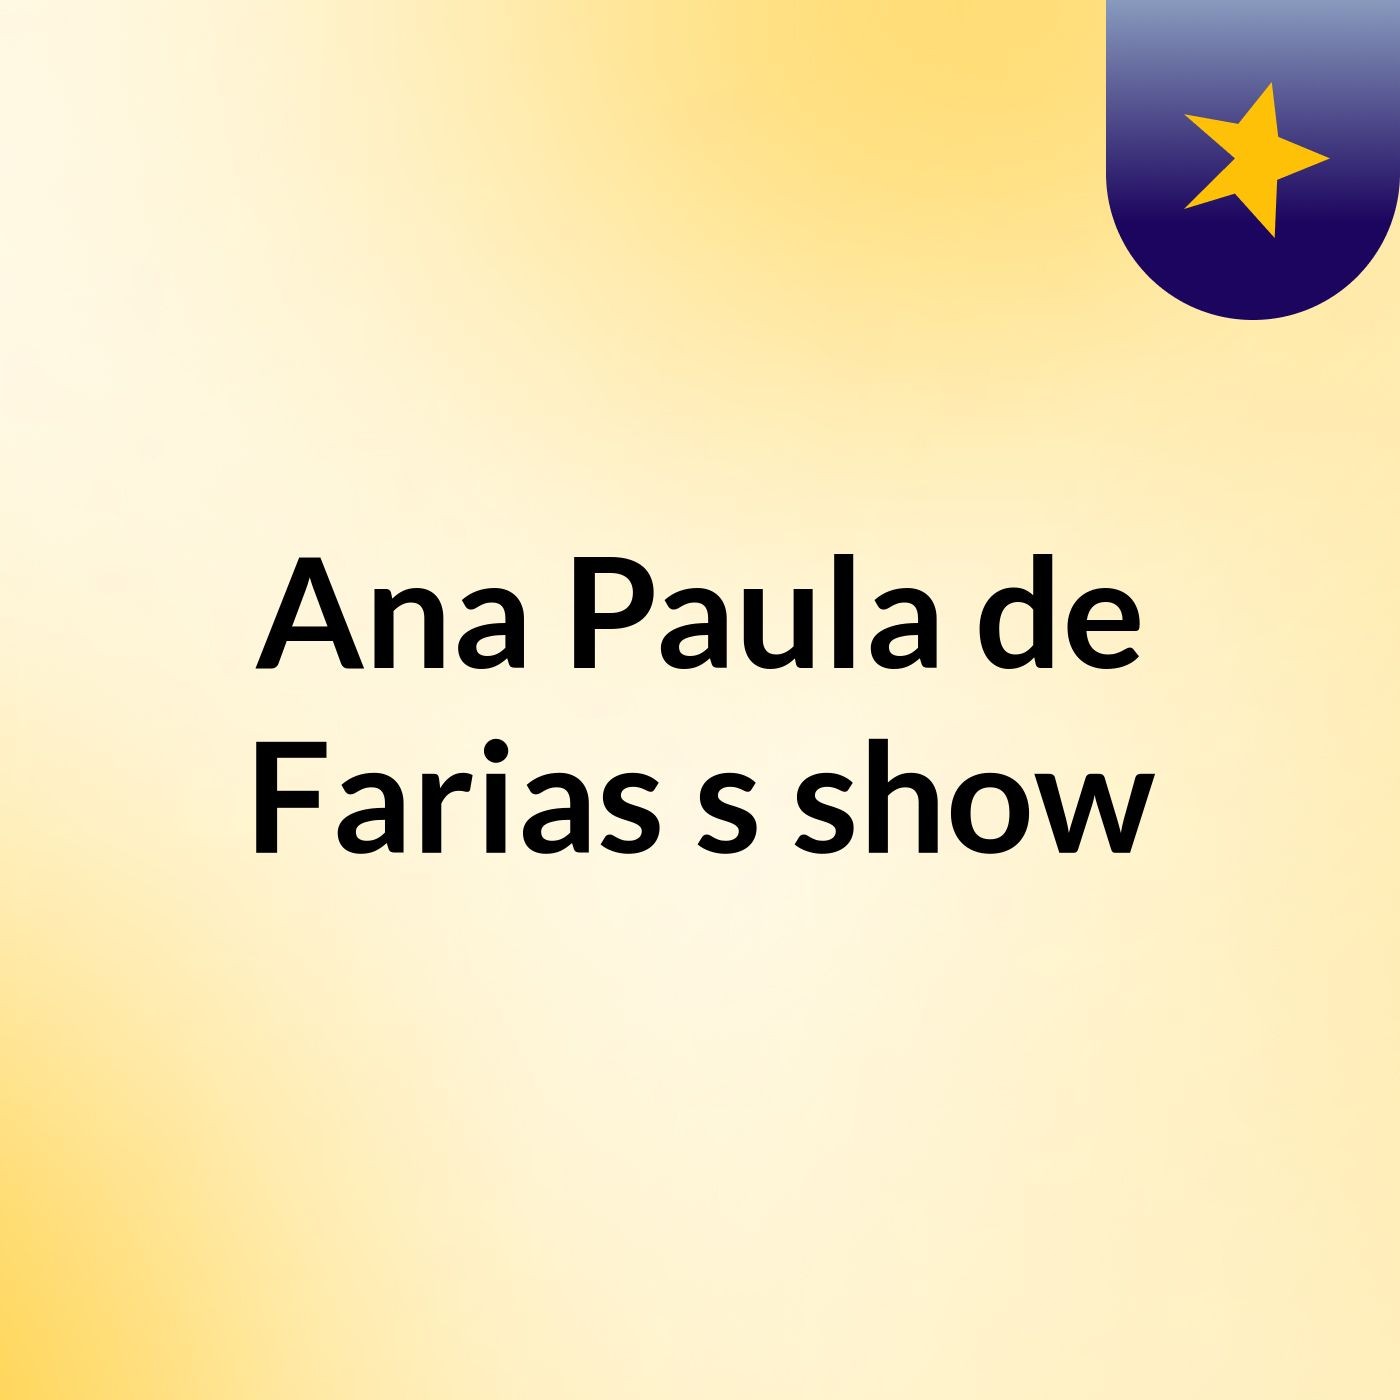 Ana Paula de Farias's show